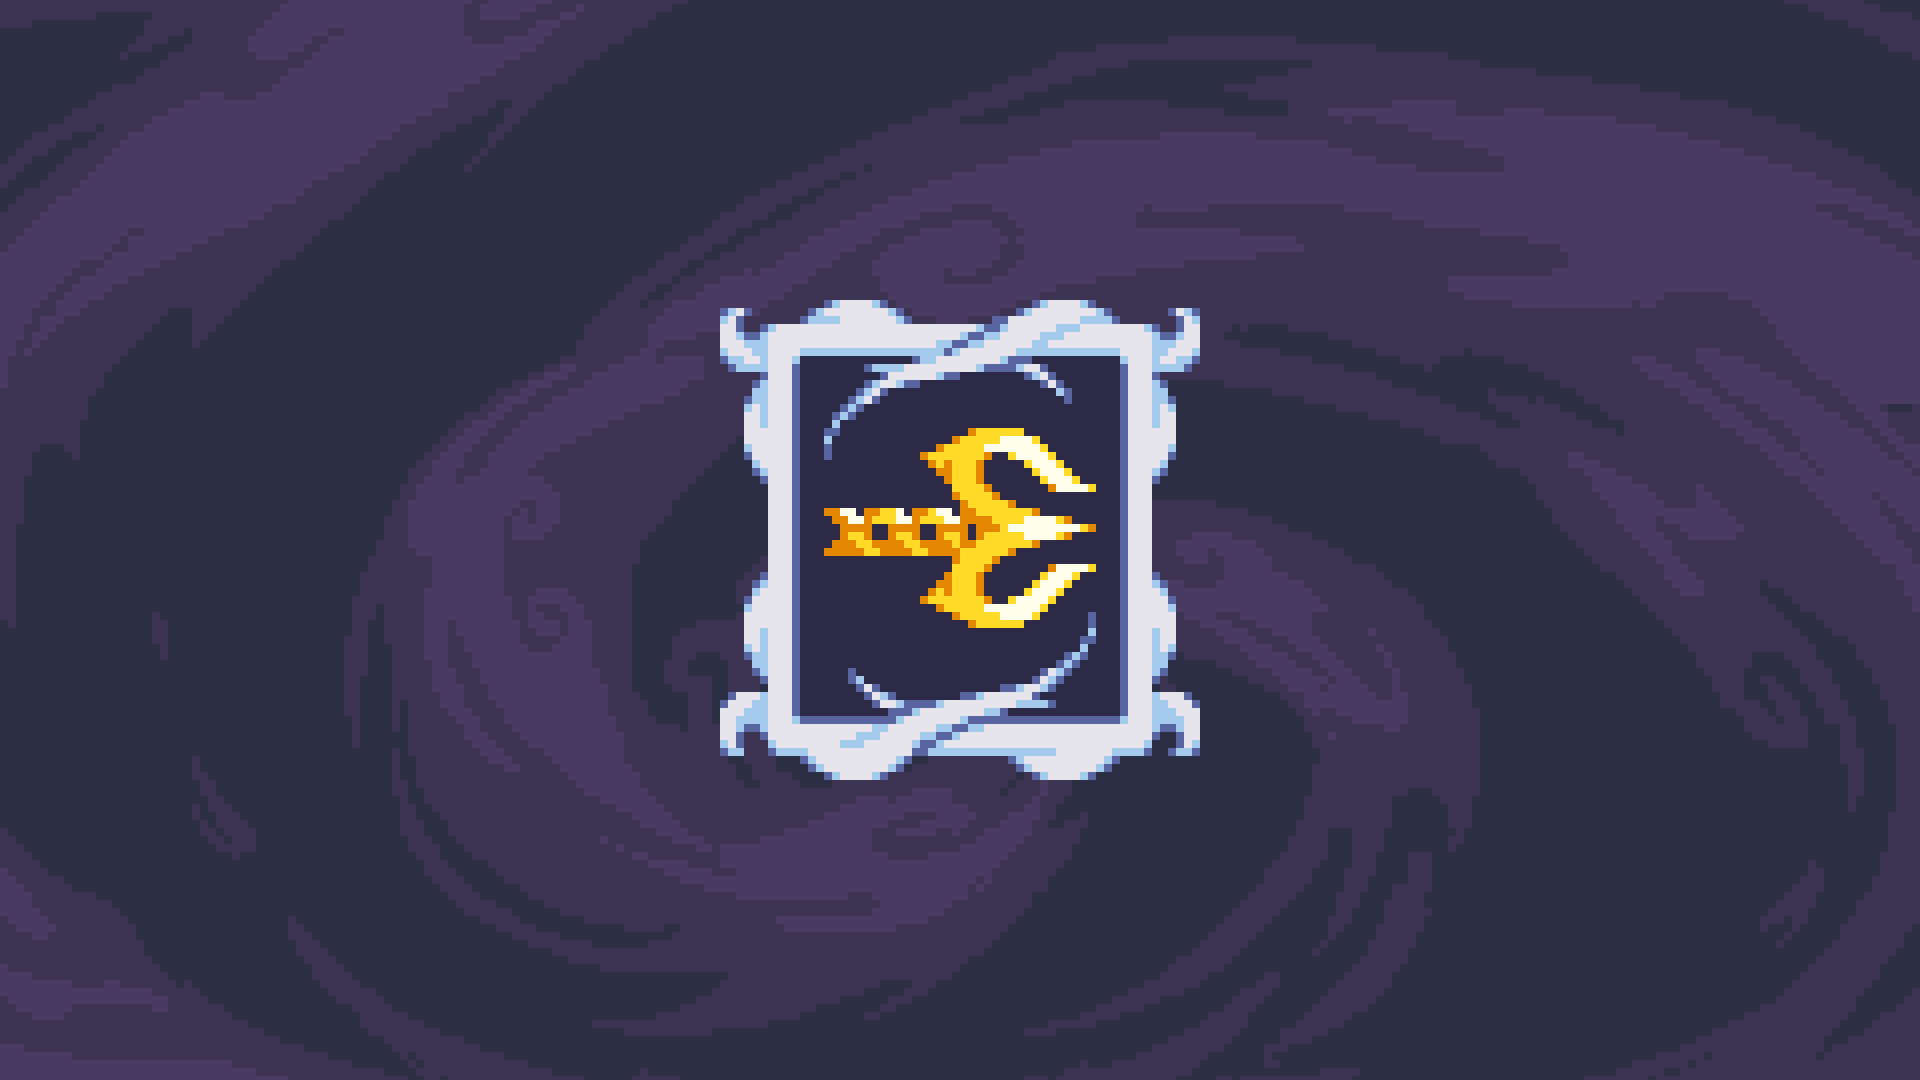 Icon for Acrobat